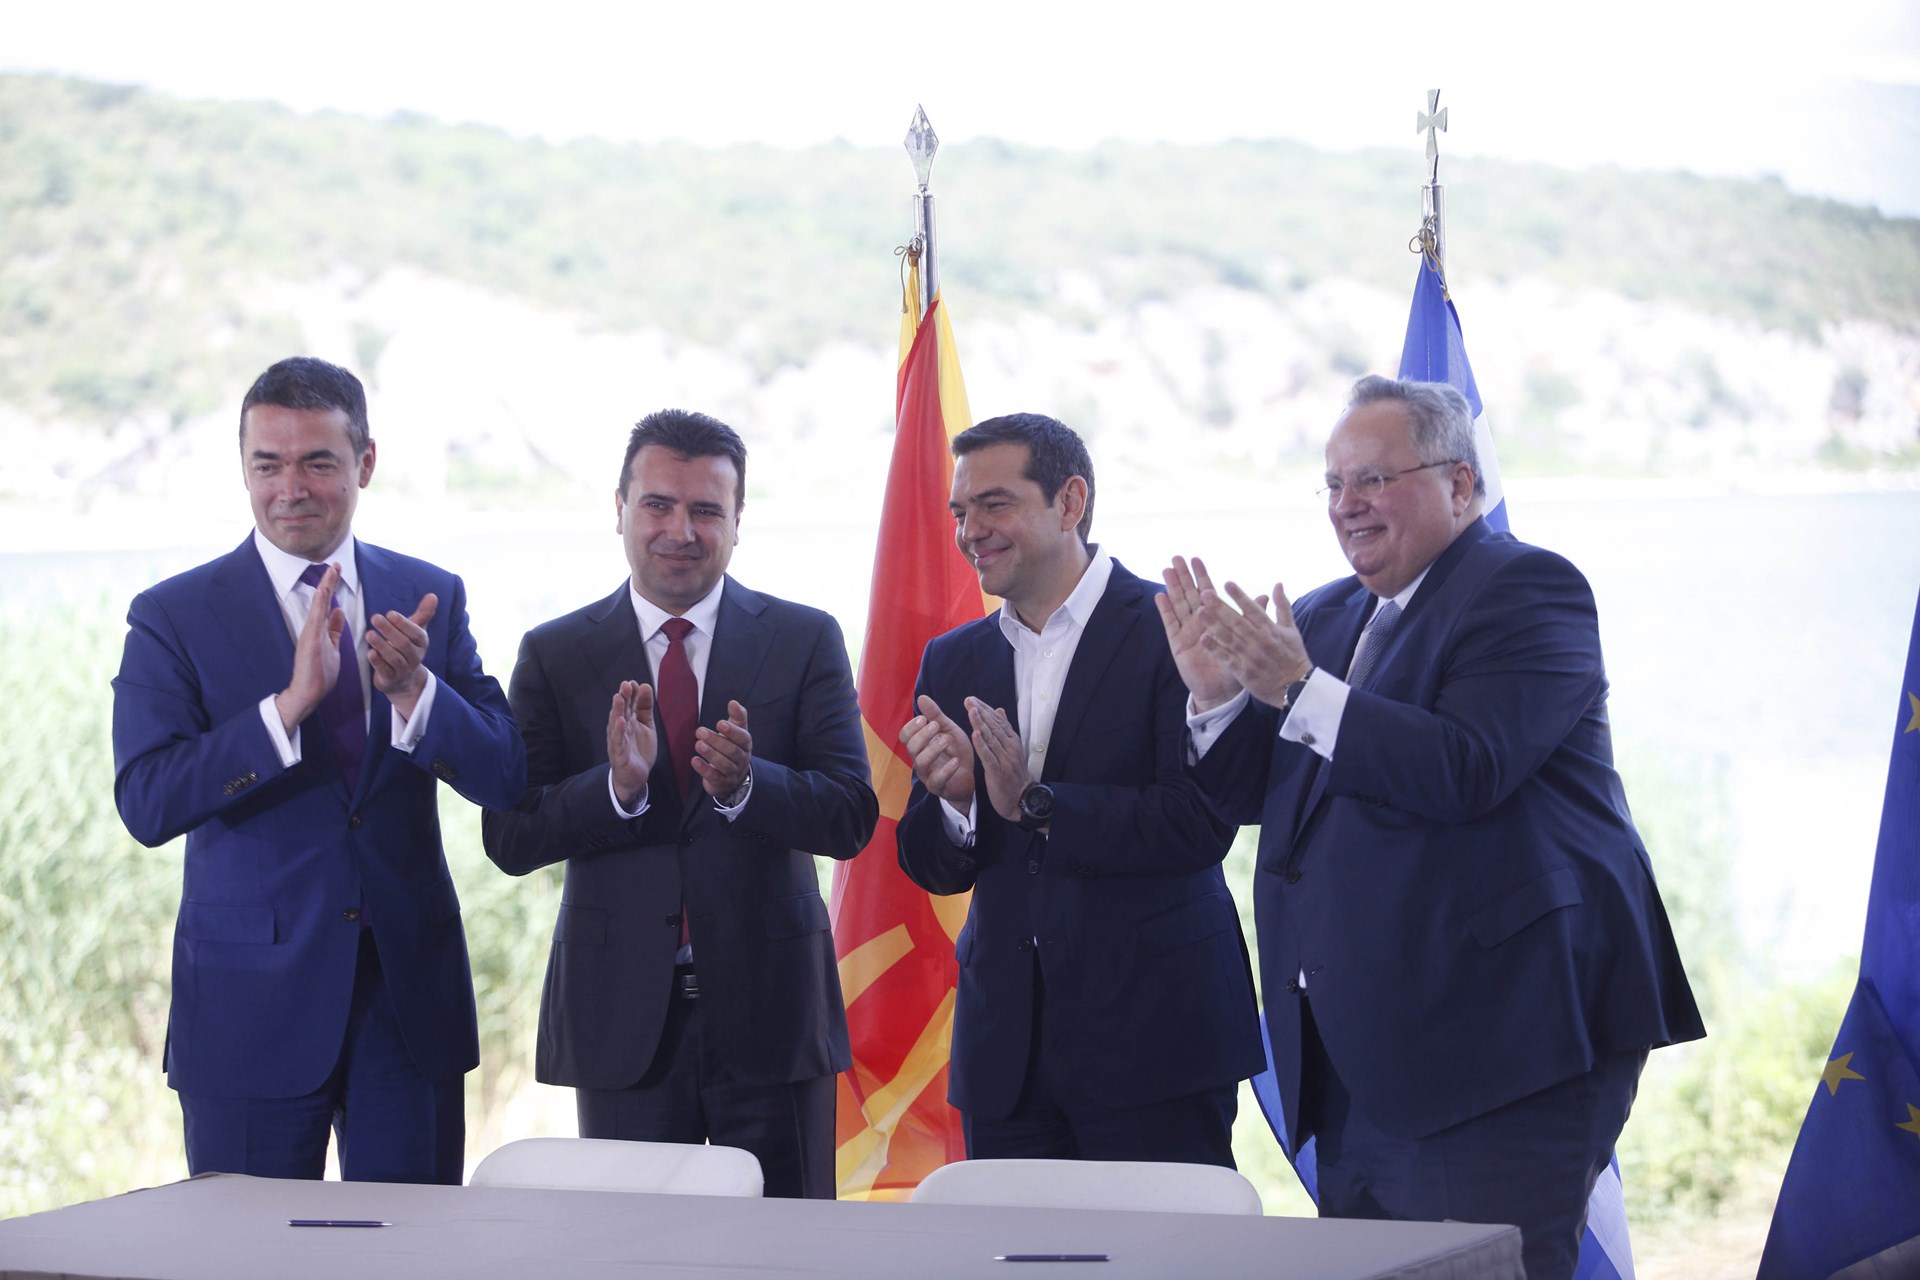 Τι λέει ο διεθνής Τύπος για τη συμφωνία Ελλάδας και πΓΔΜ που έγινε και επίσημα «Μακεδονία»